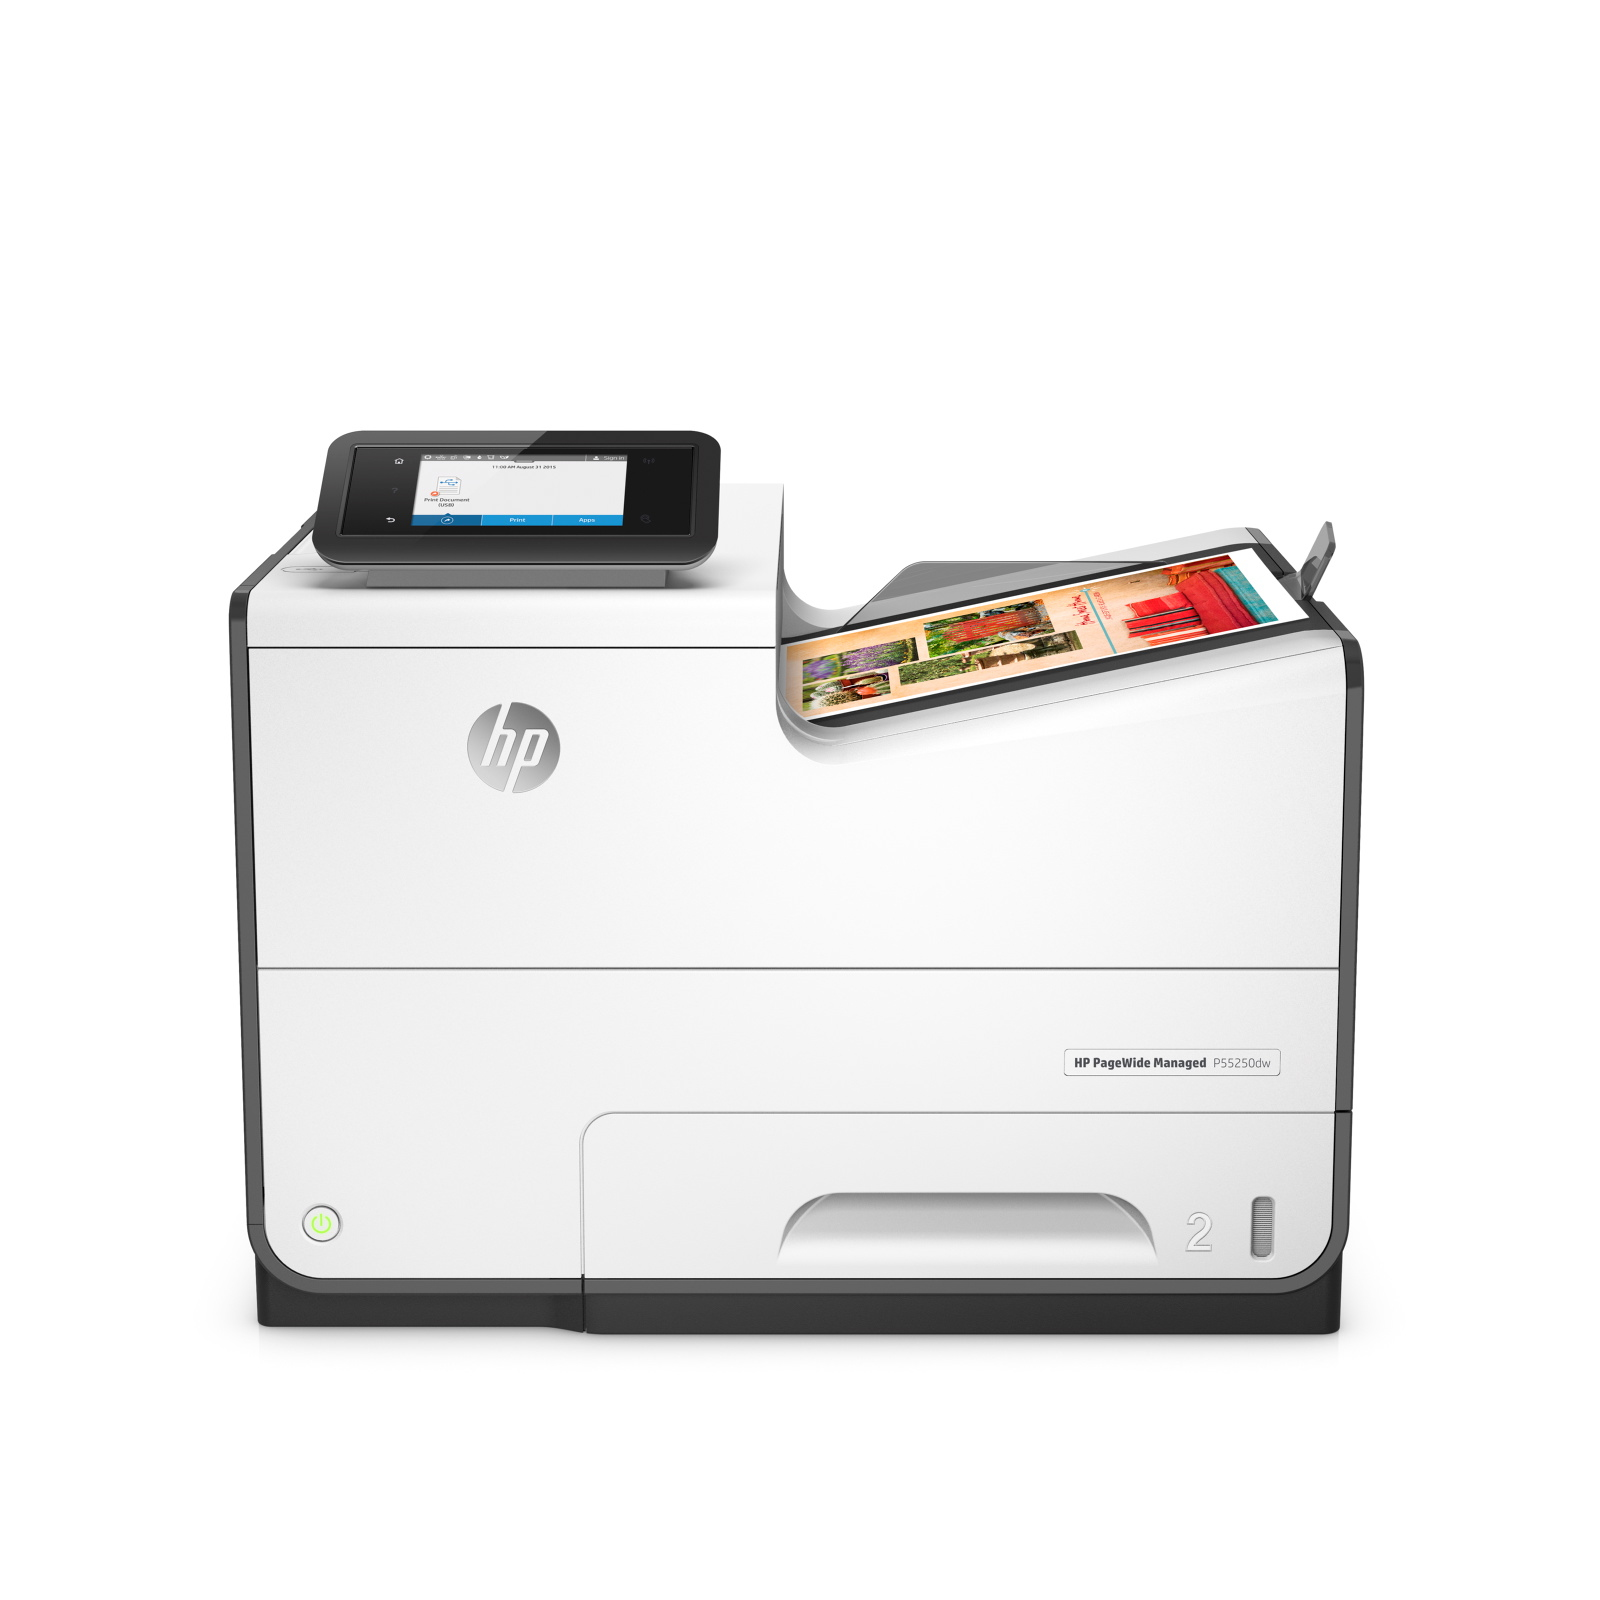 HP PageWide Managed P55250dw inkjet printer